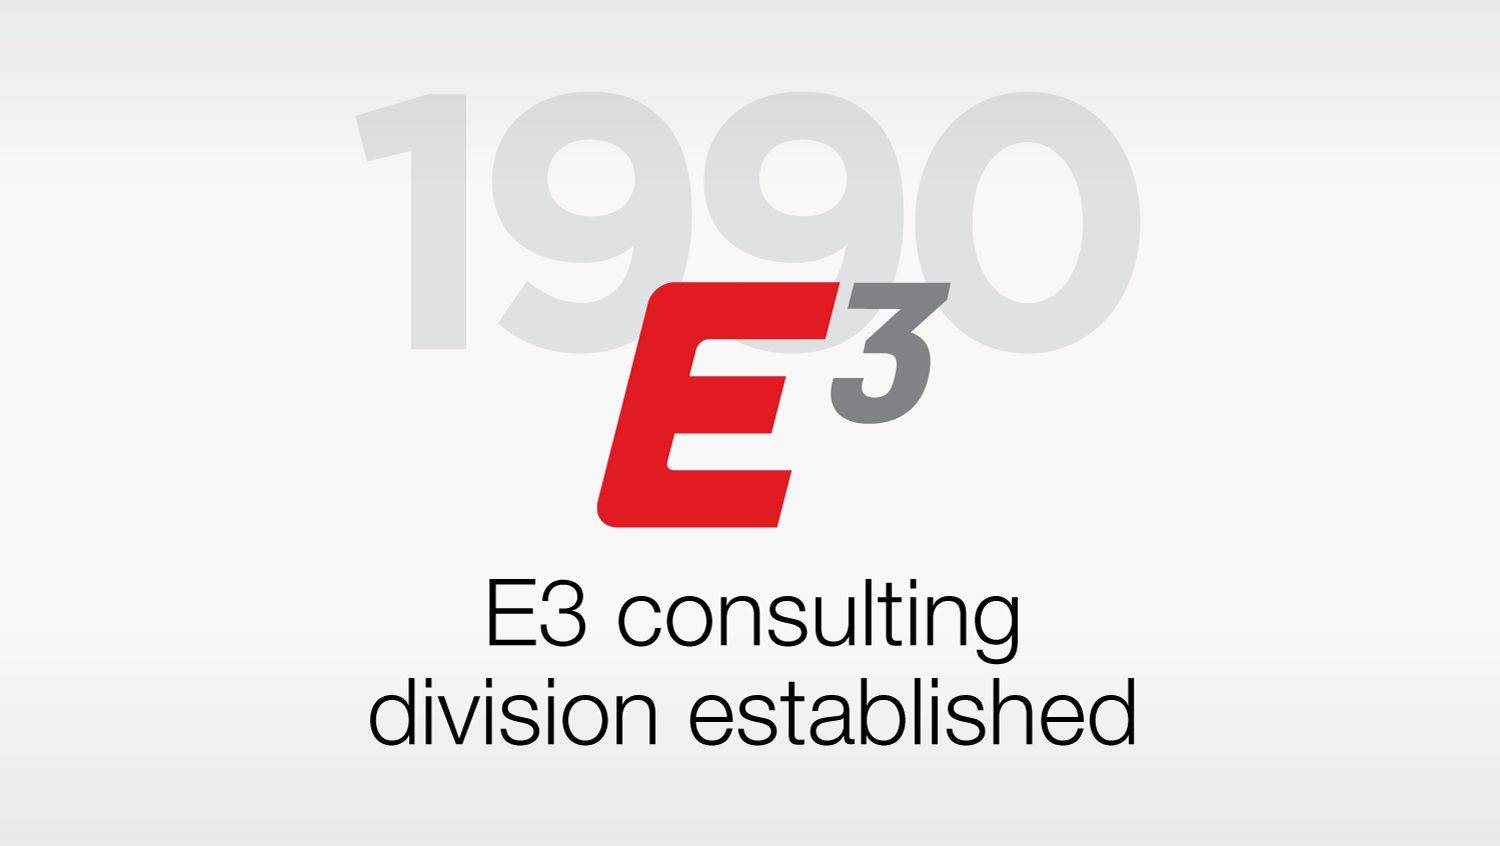 E3 Consulting